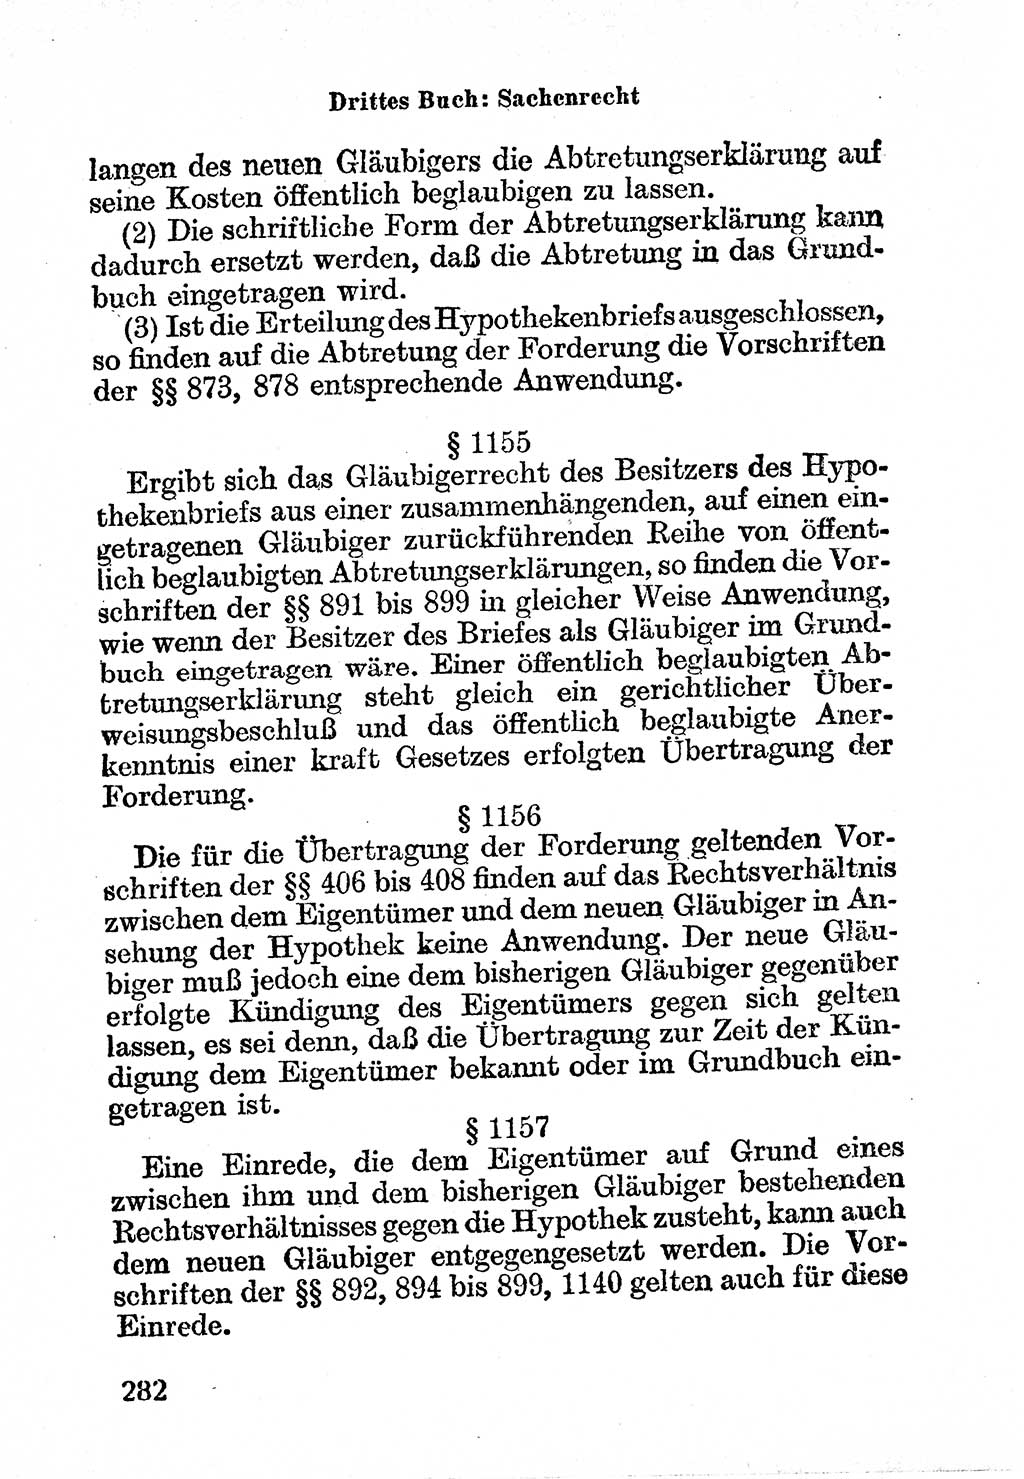 Bürgerliches Gesetzbuch (BGB) nebst wichtigen Nebengesetzen [Deutsche Demokratische Republik (DDR)] 1956, Seite 282 (BGB Nebenges. DDR 1956, S. 282)